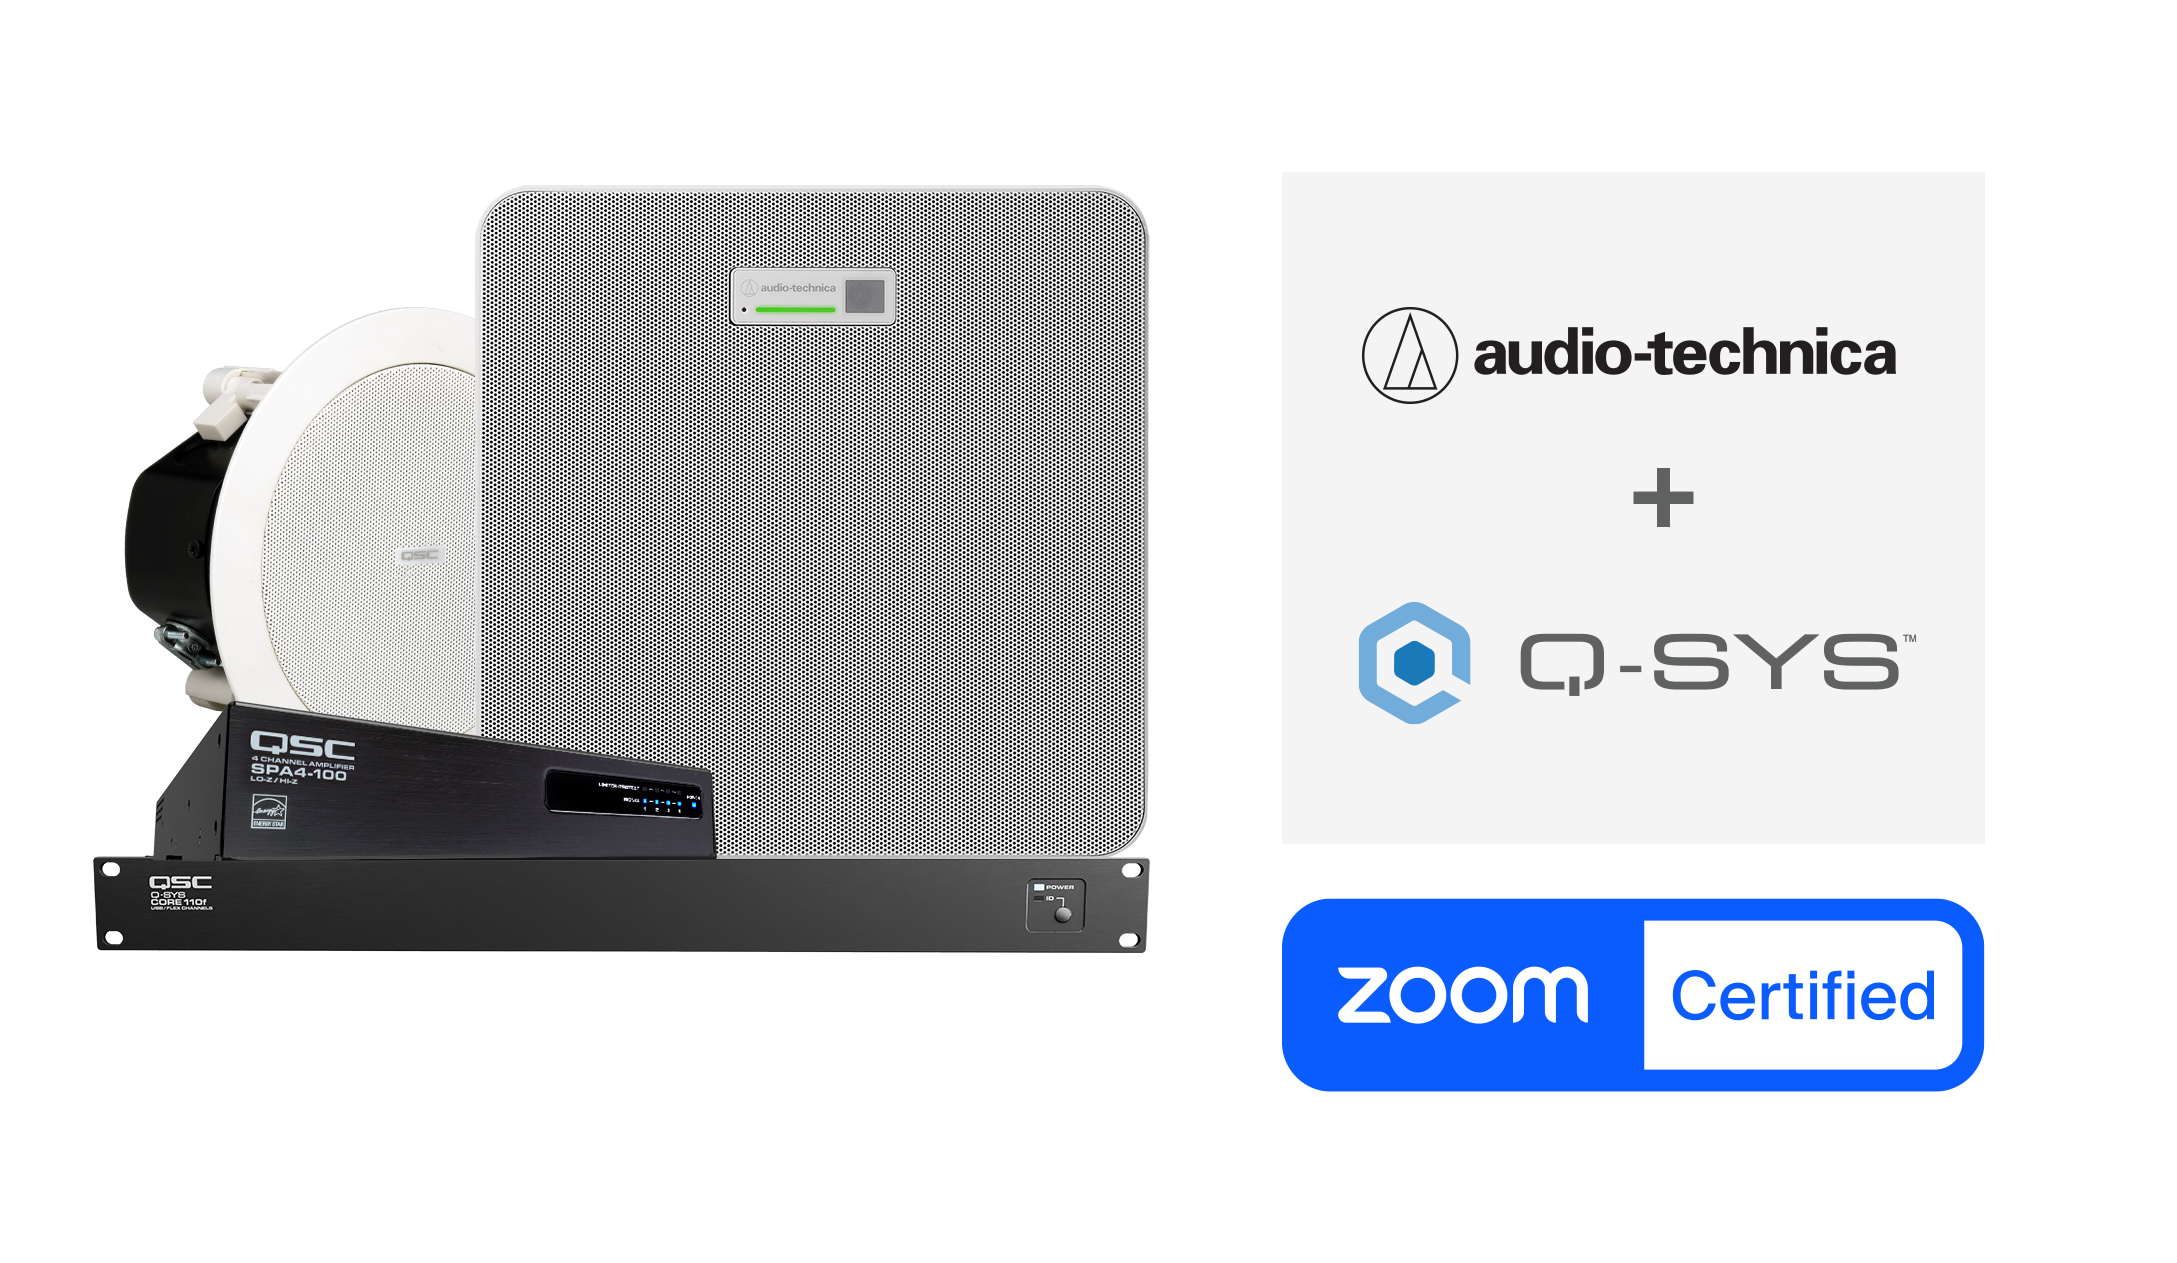 Le microphone ATND1061DAN en combinaison avec le système Q-SYS obtient la certification Zoom Rooms!